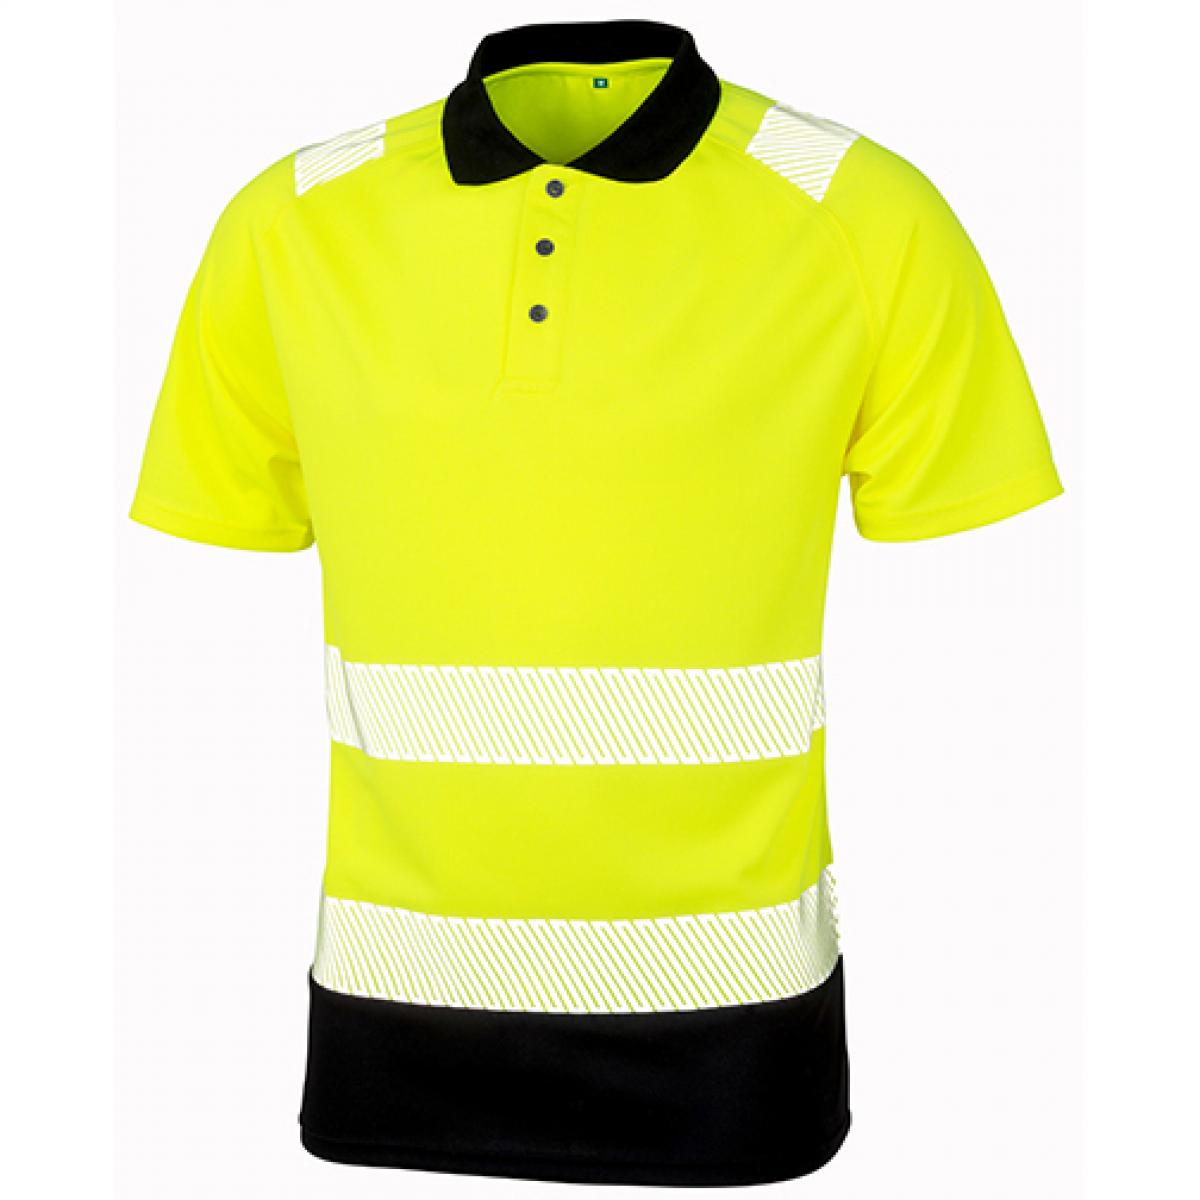 Hersteller: Result Genuine Recycled Herstellernummer: R501X Artikelbezeichnung: Recycled Safety Polo Shirt - Schnell trocknend Farbe: Fluorescent Yellow/Black